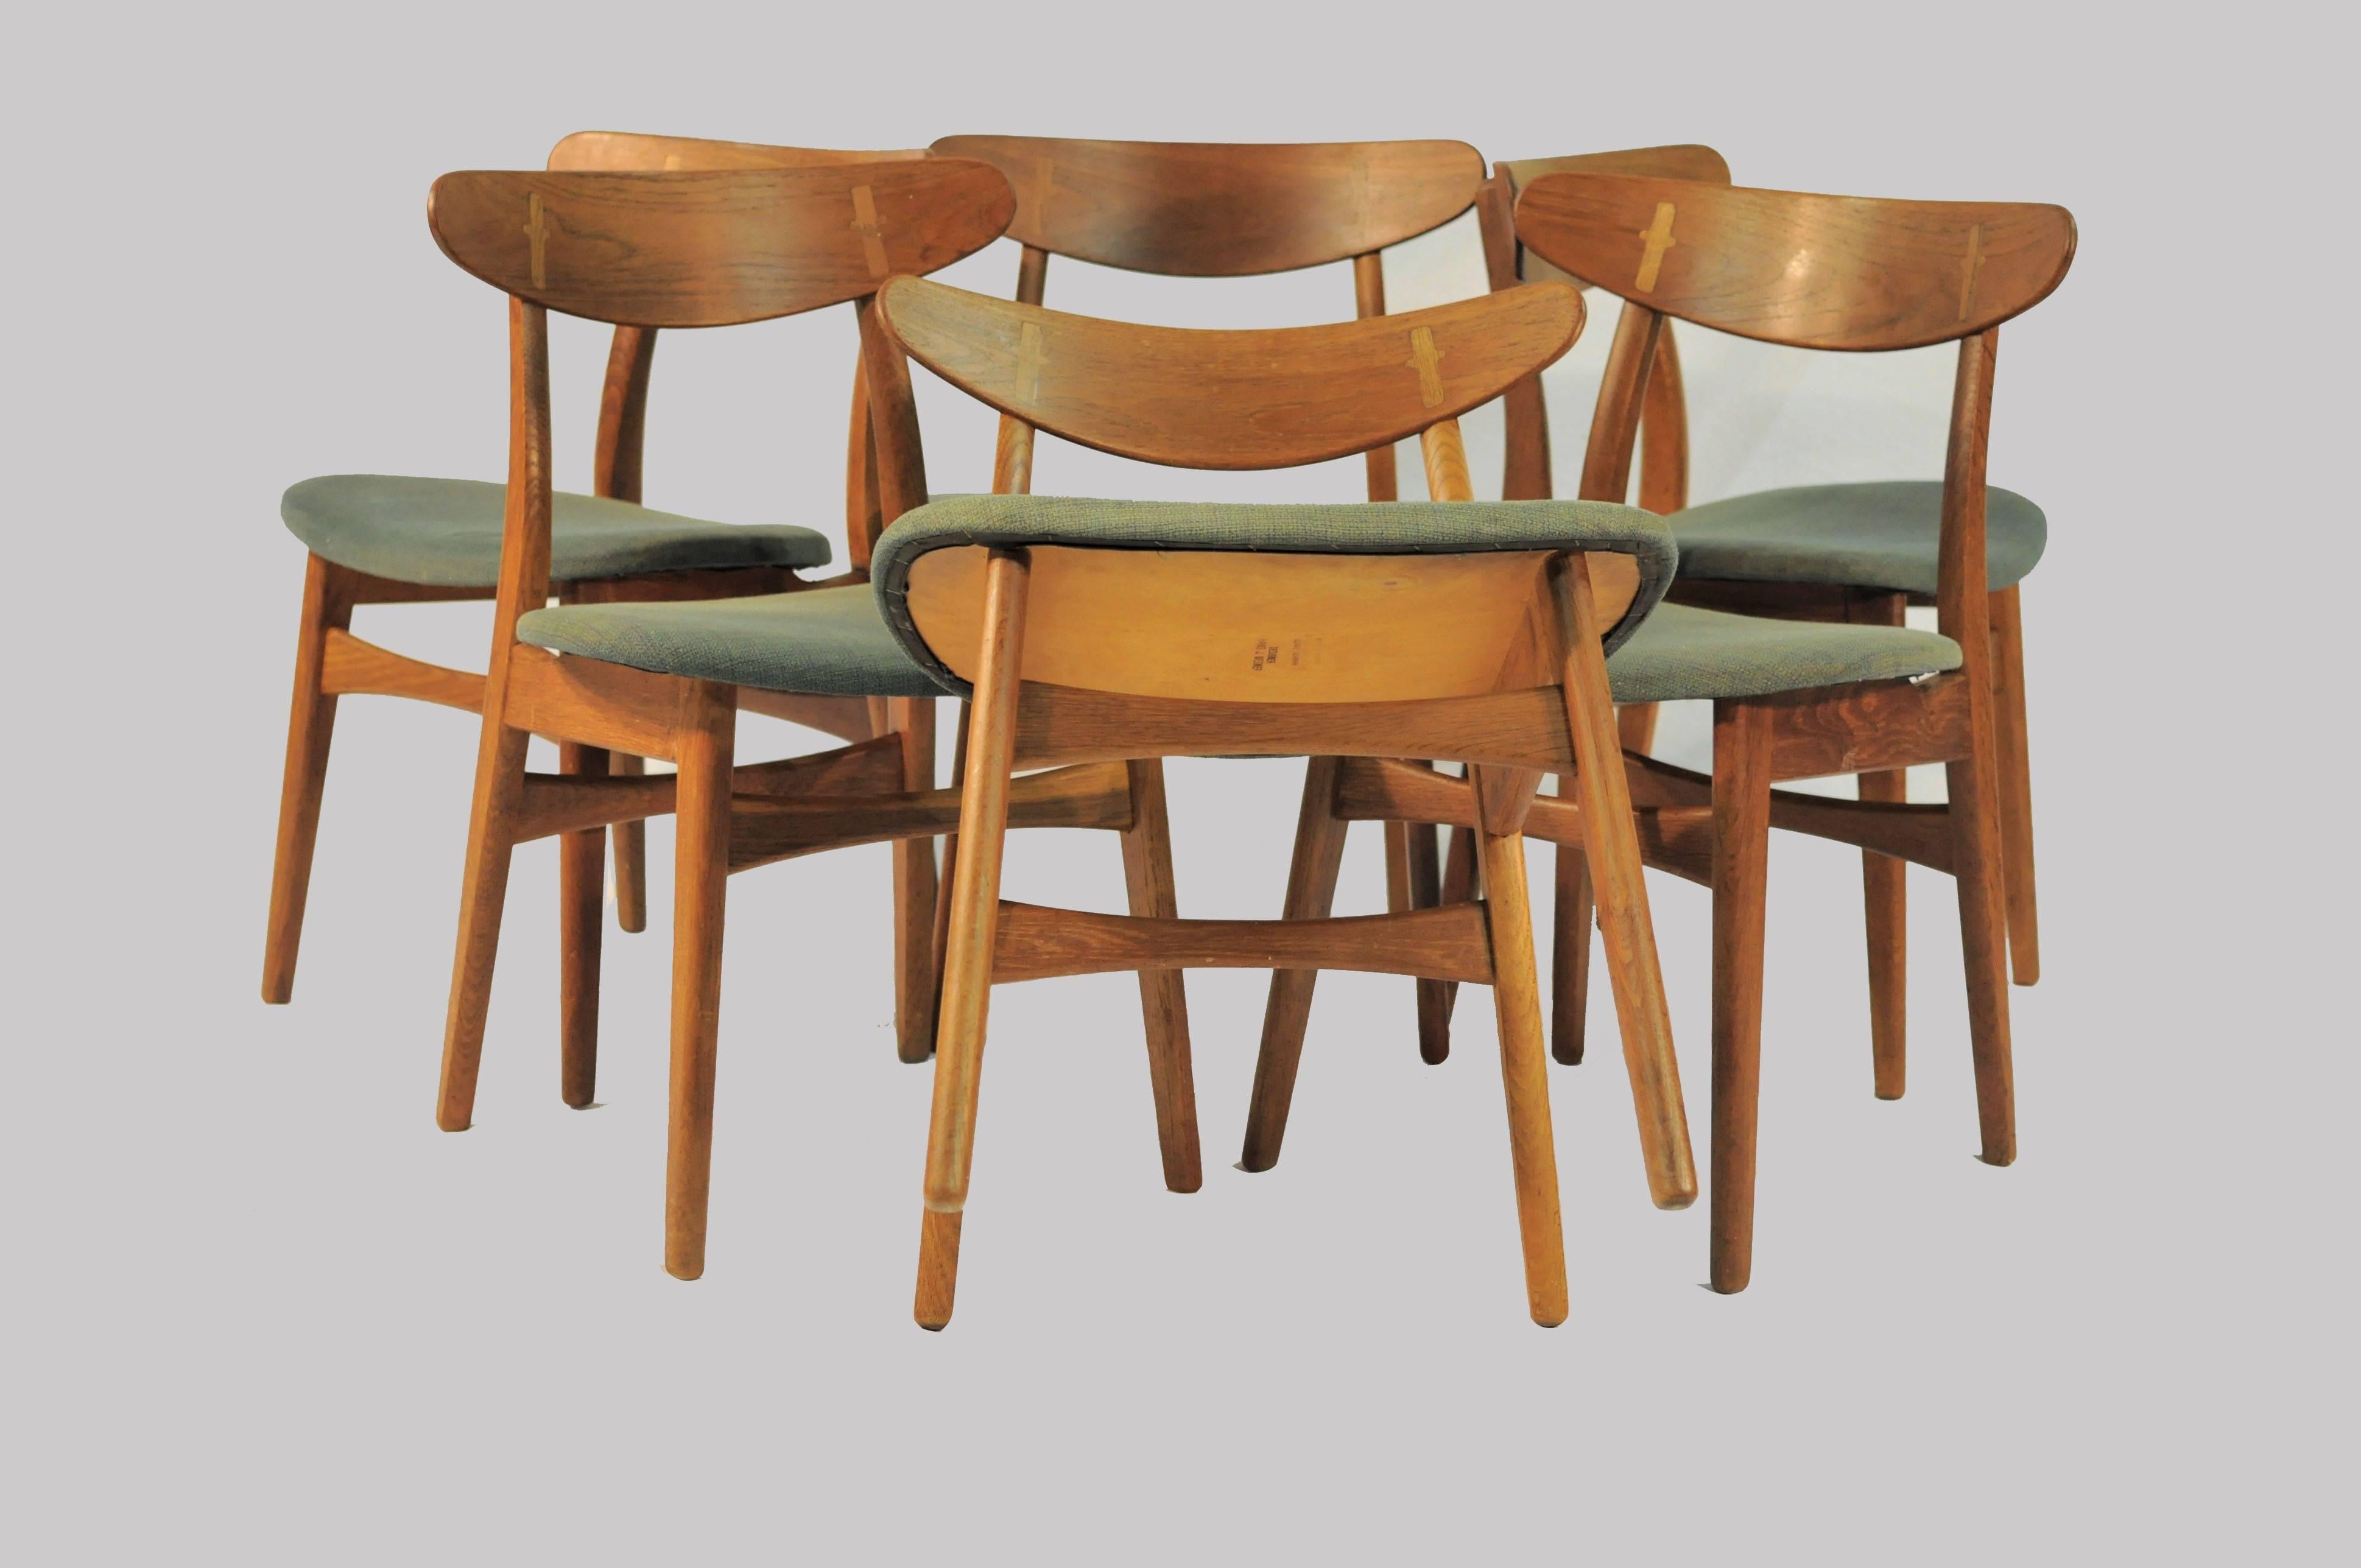 Scandinavian Modern 1950s Set of Six Hans Wegner Dining Chairs CH30 in Oak, Teak and Green Fabric